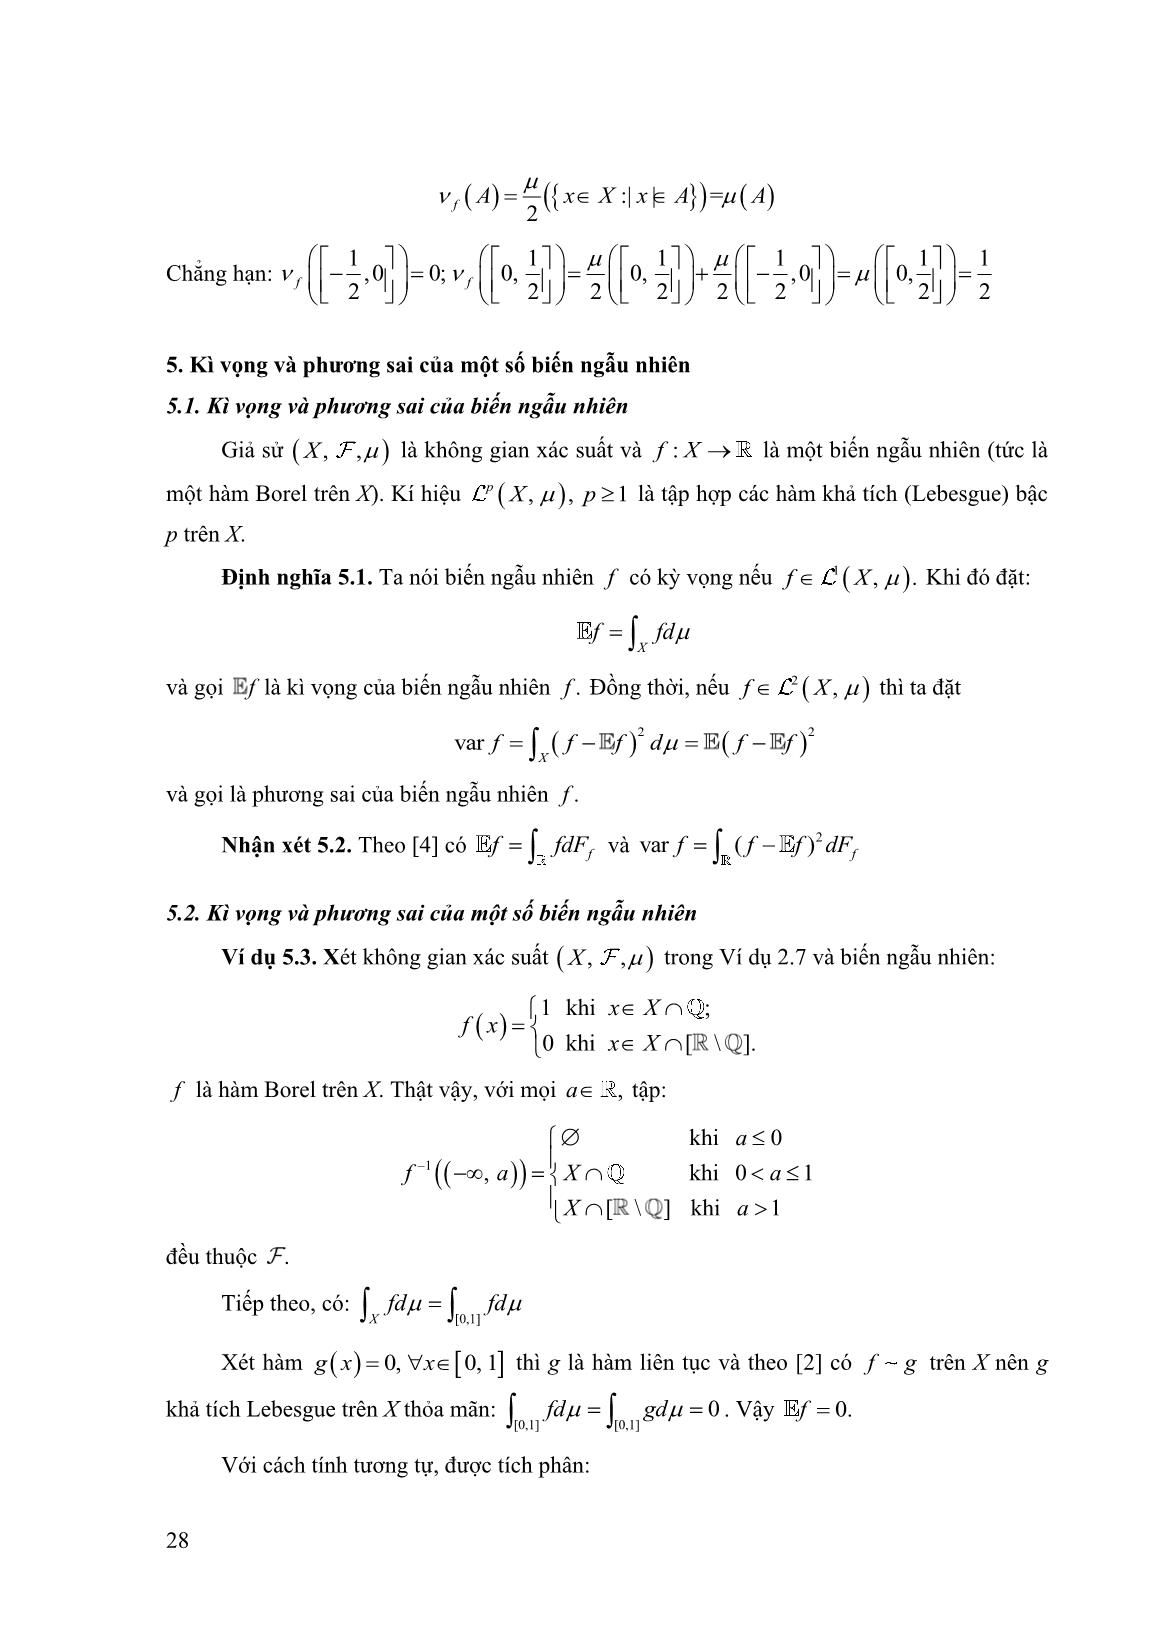 Một số không gian xác suất trên R trang 7